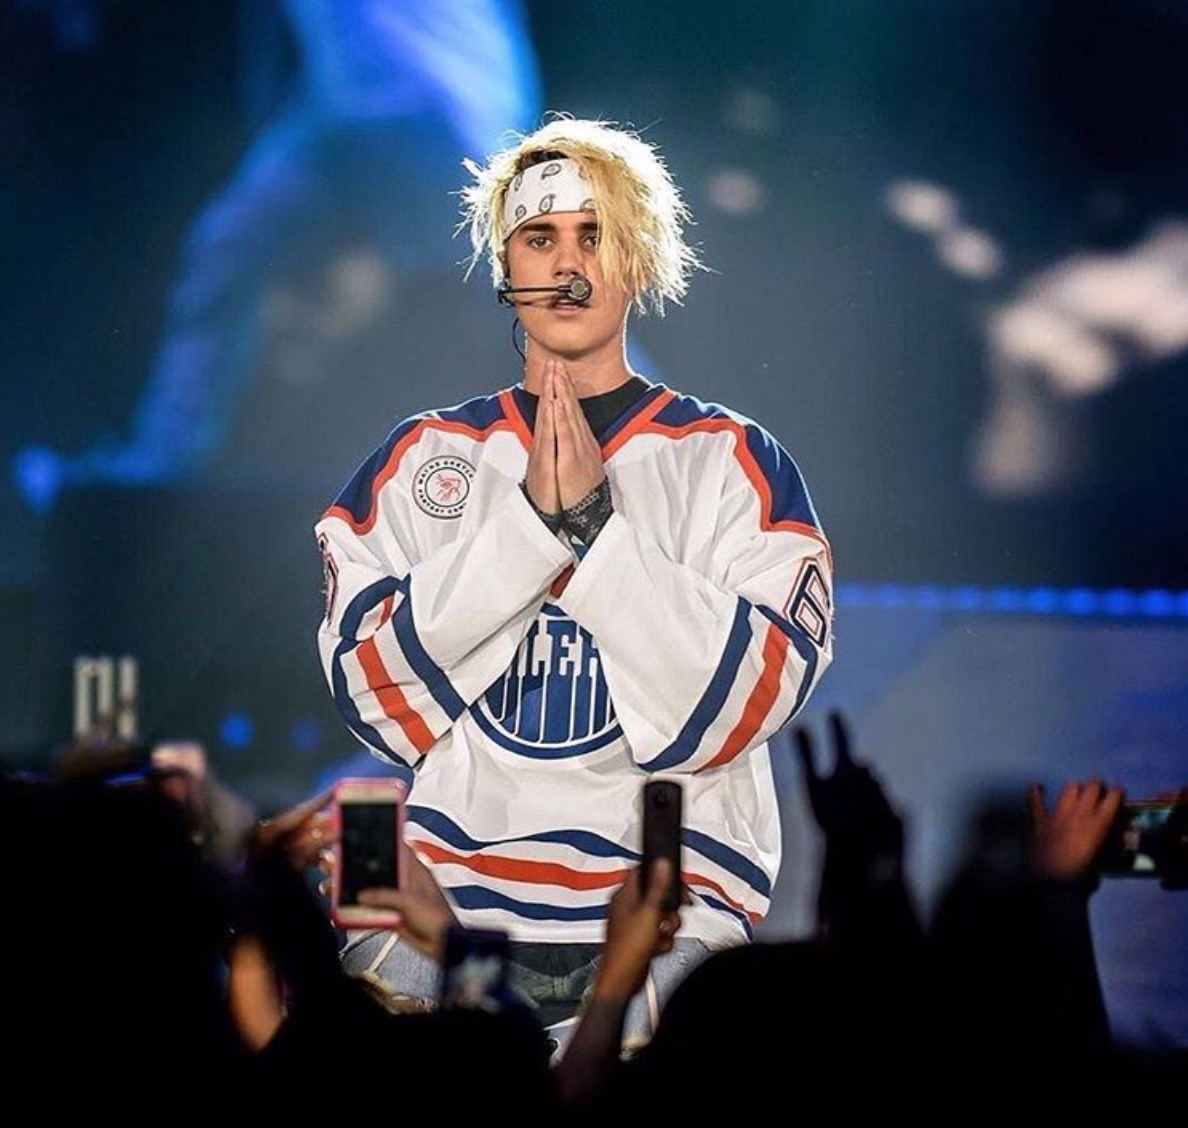 Justin Bieber’s performs in Edmonton Oilers Jersey